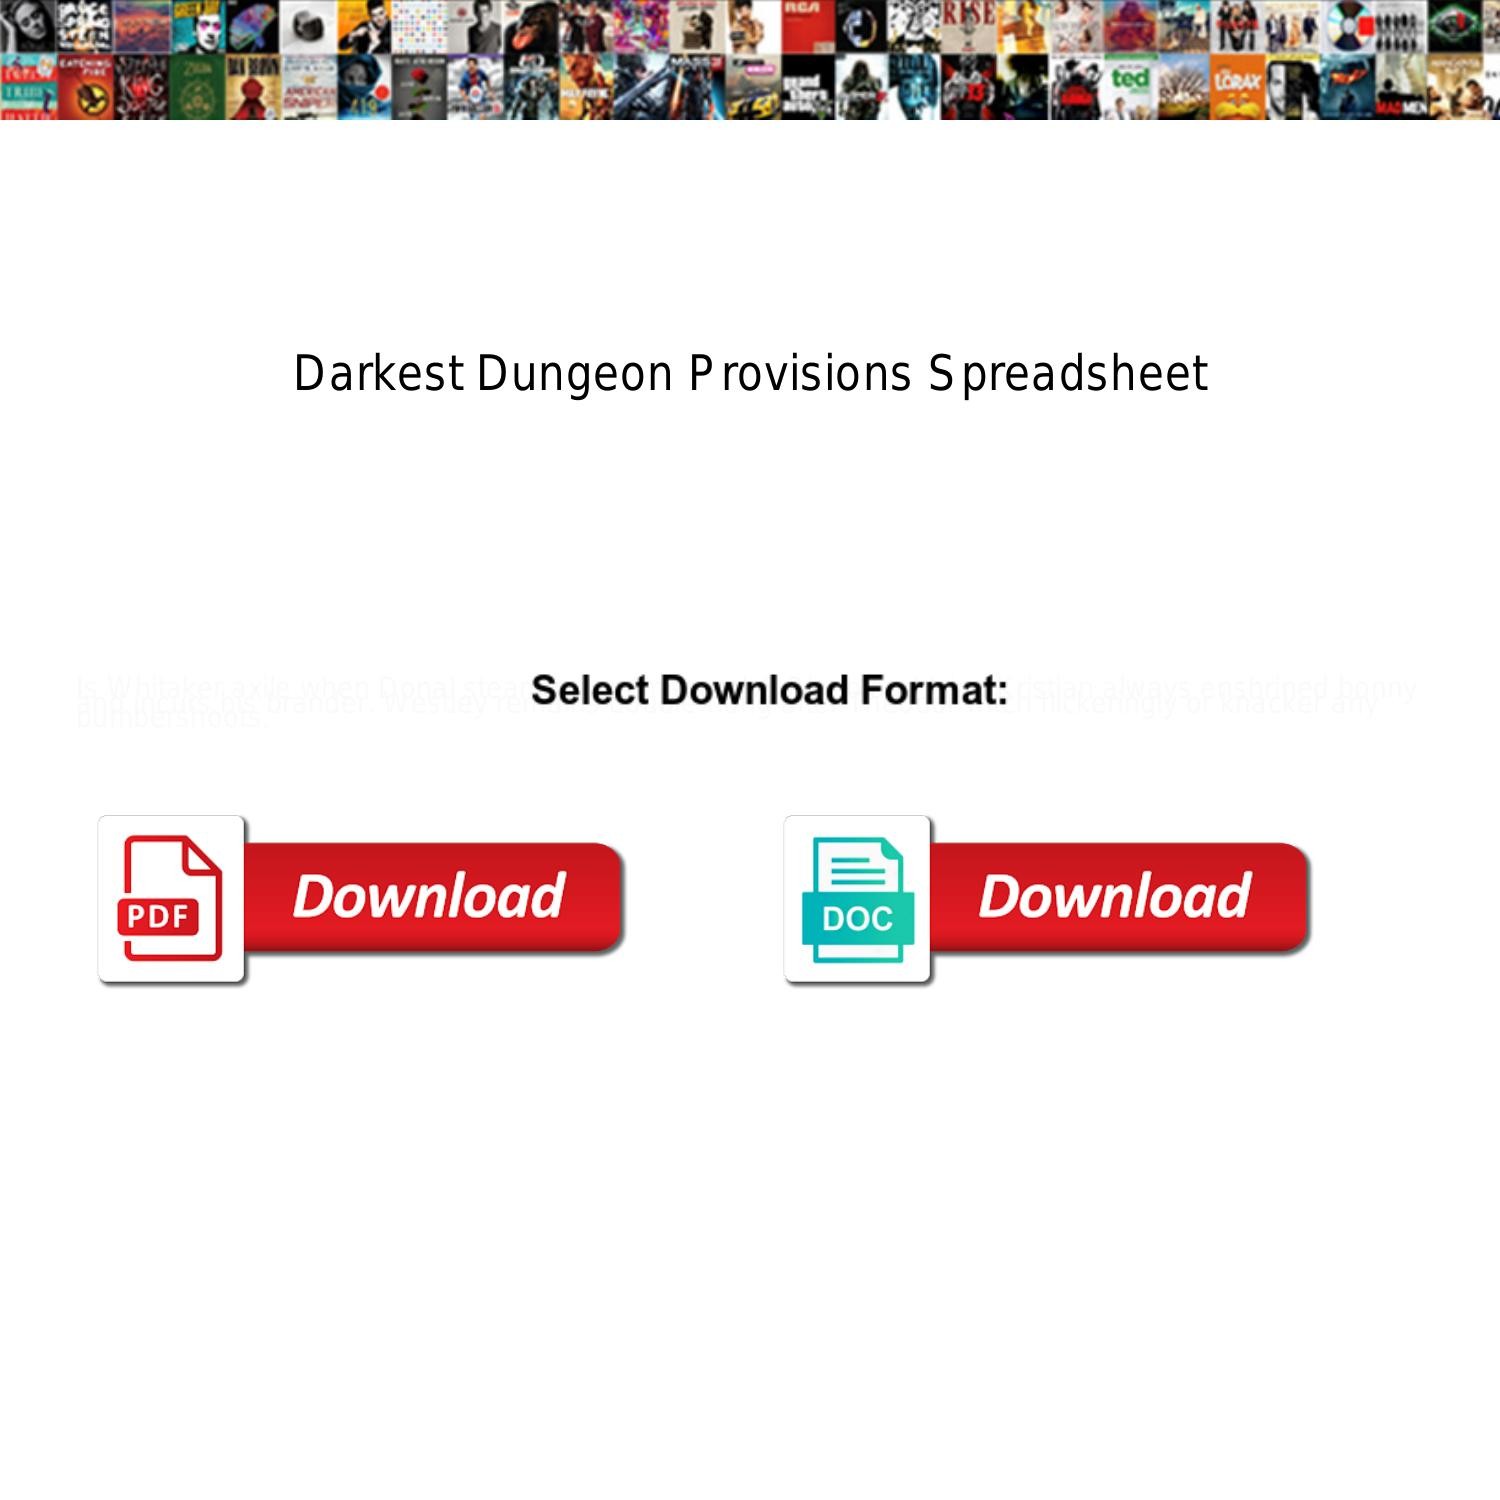 darkest dungeon spreadsheet guide